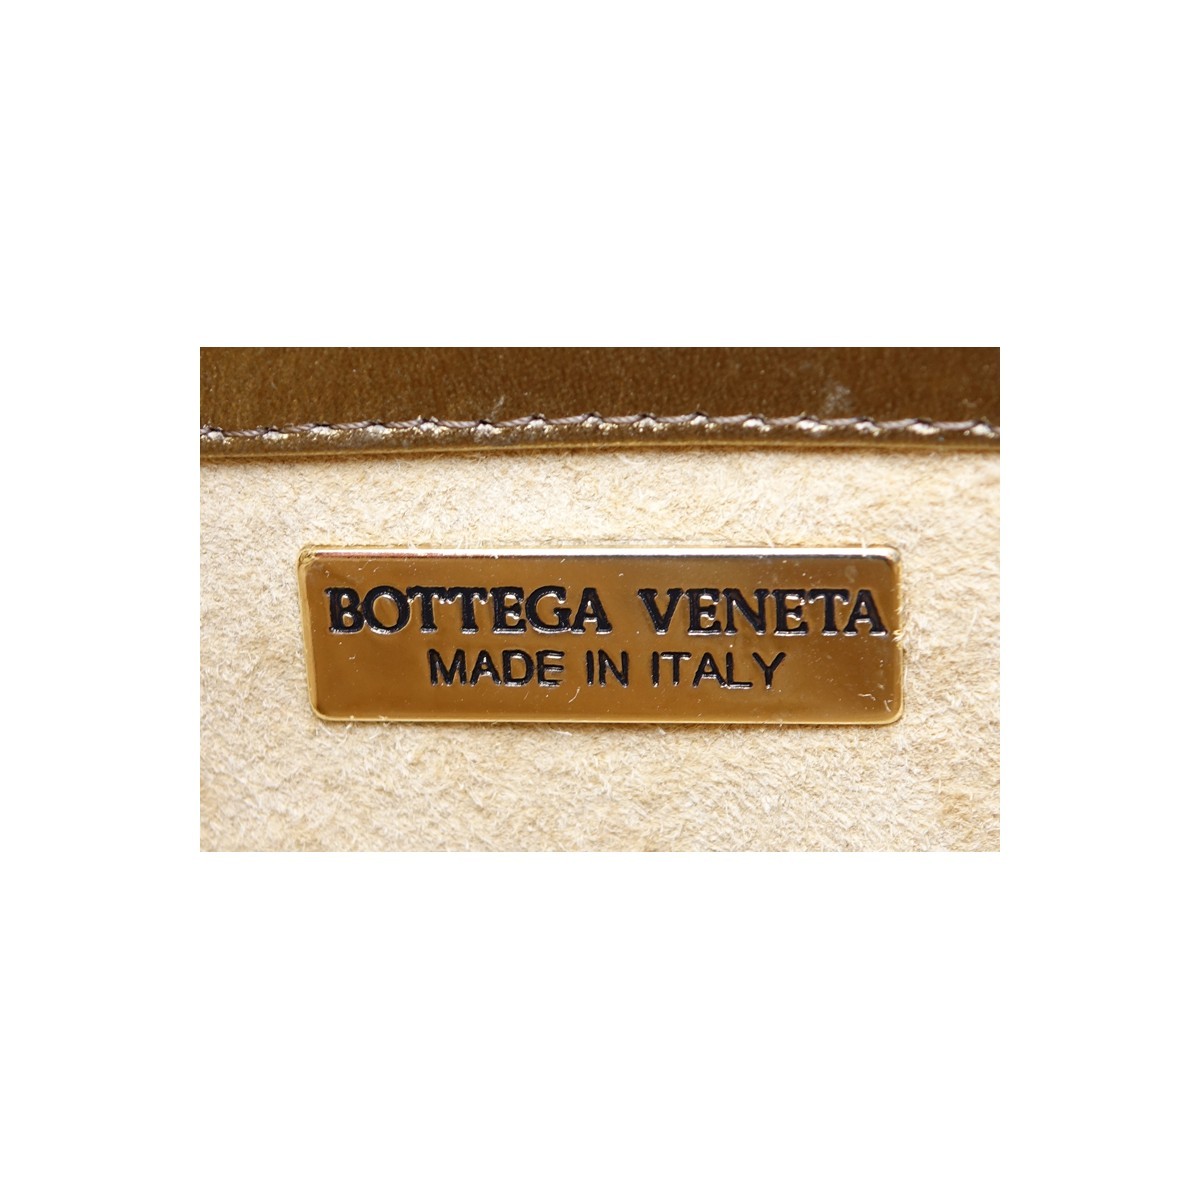 Bottega Veneta Gold Woven Shoulder Bag. Gold tone hardware, beige suede interior with zippered pocket.